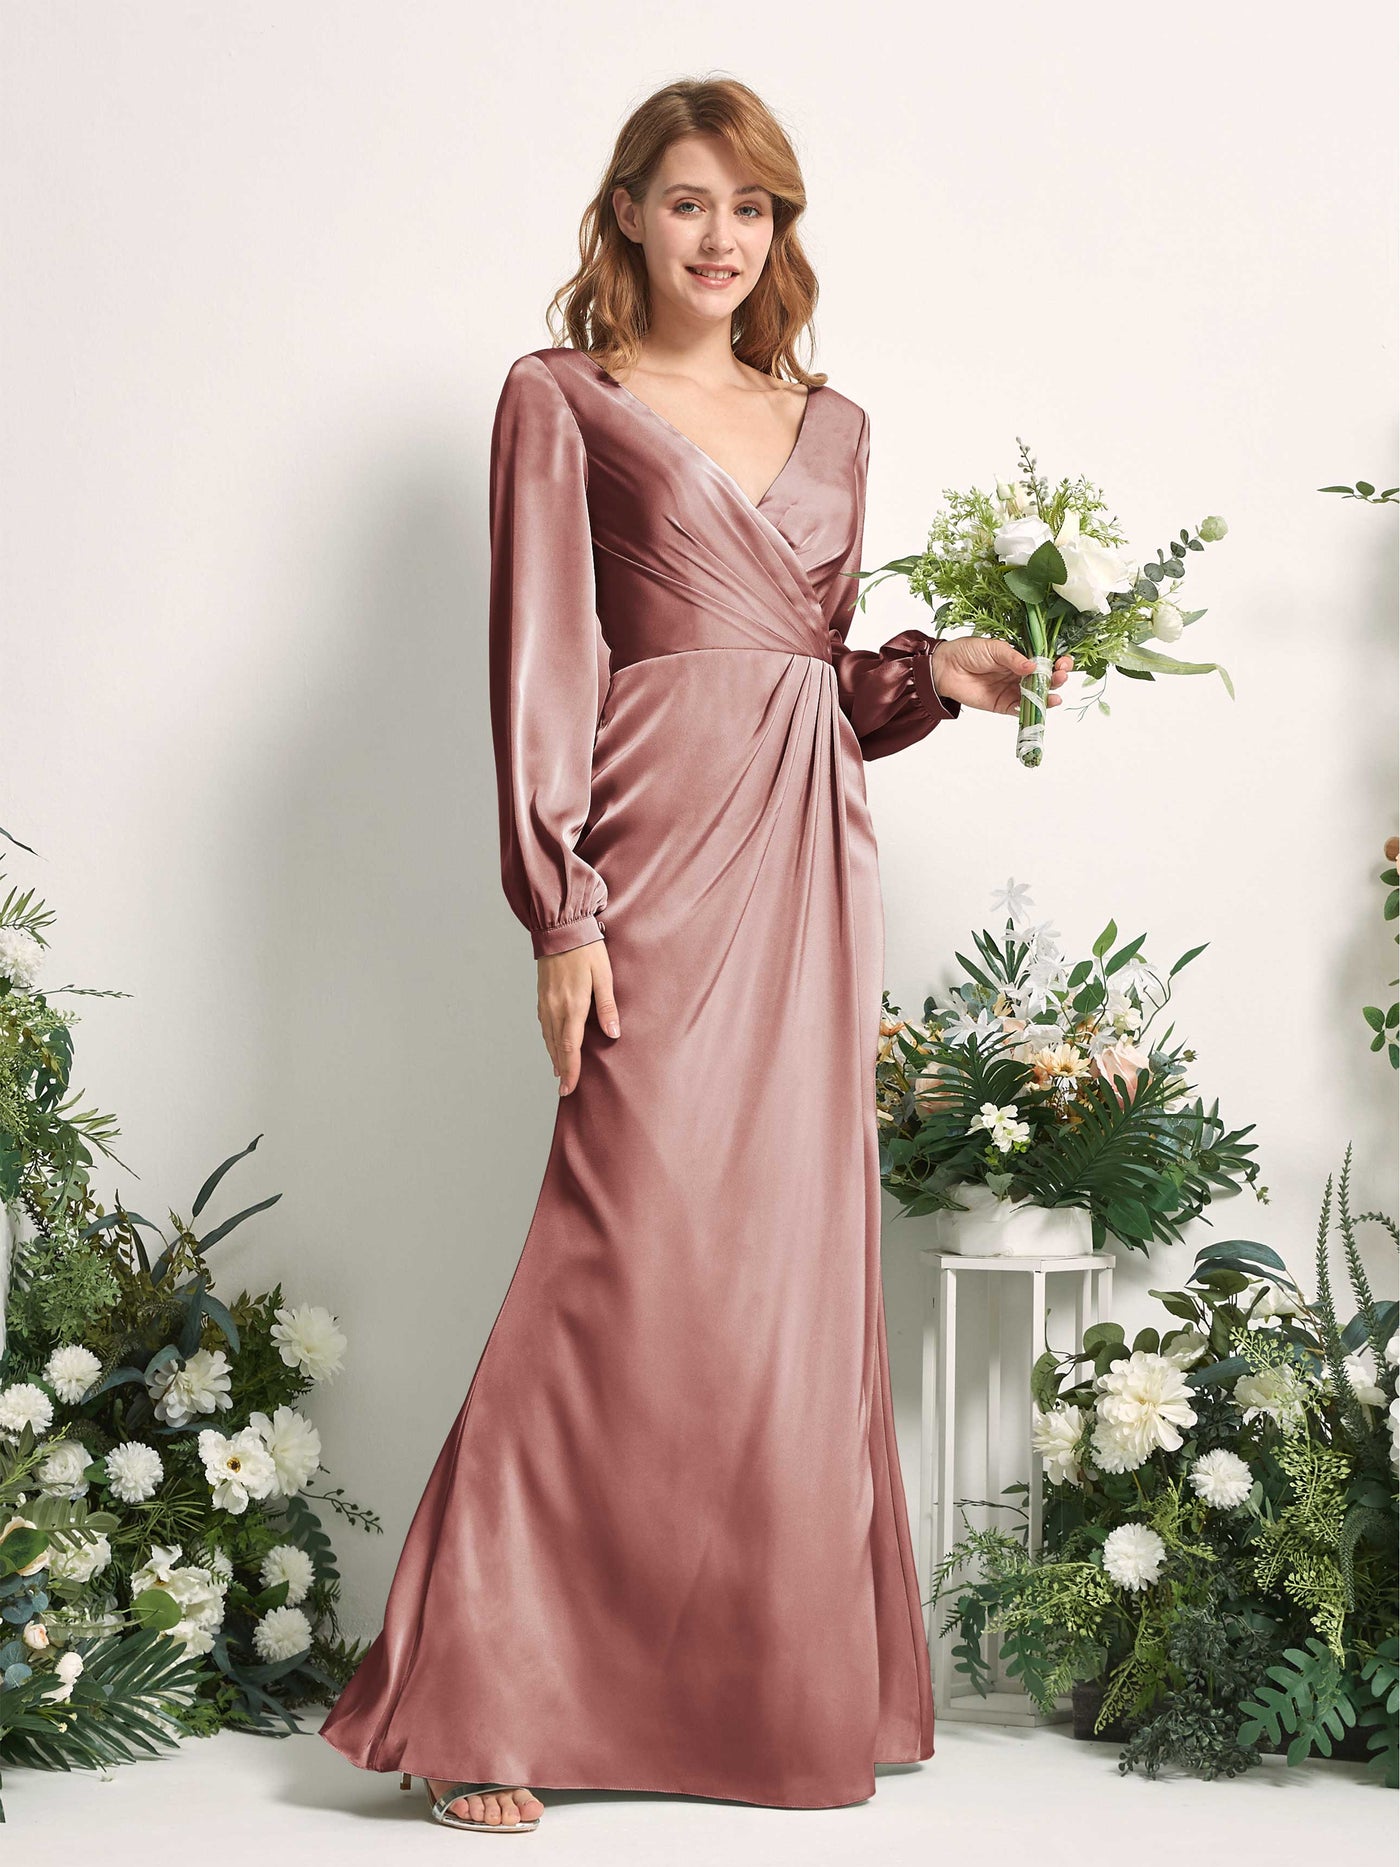 Desert Rose Bridesmaid Dresses Bridesmaid Dress Ball Gown Satin V-neck Full Length Long Sleeves Wedding Party Dress (80225117)#color_desert-rose